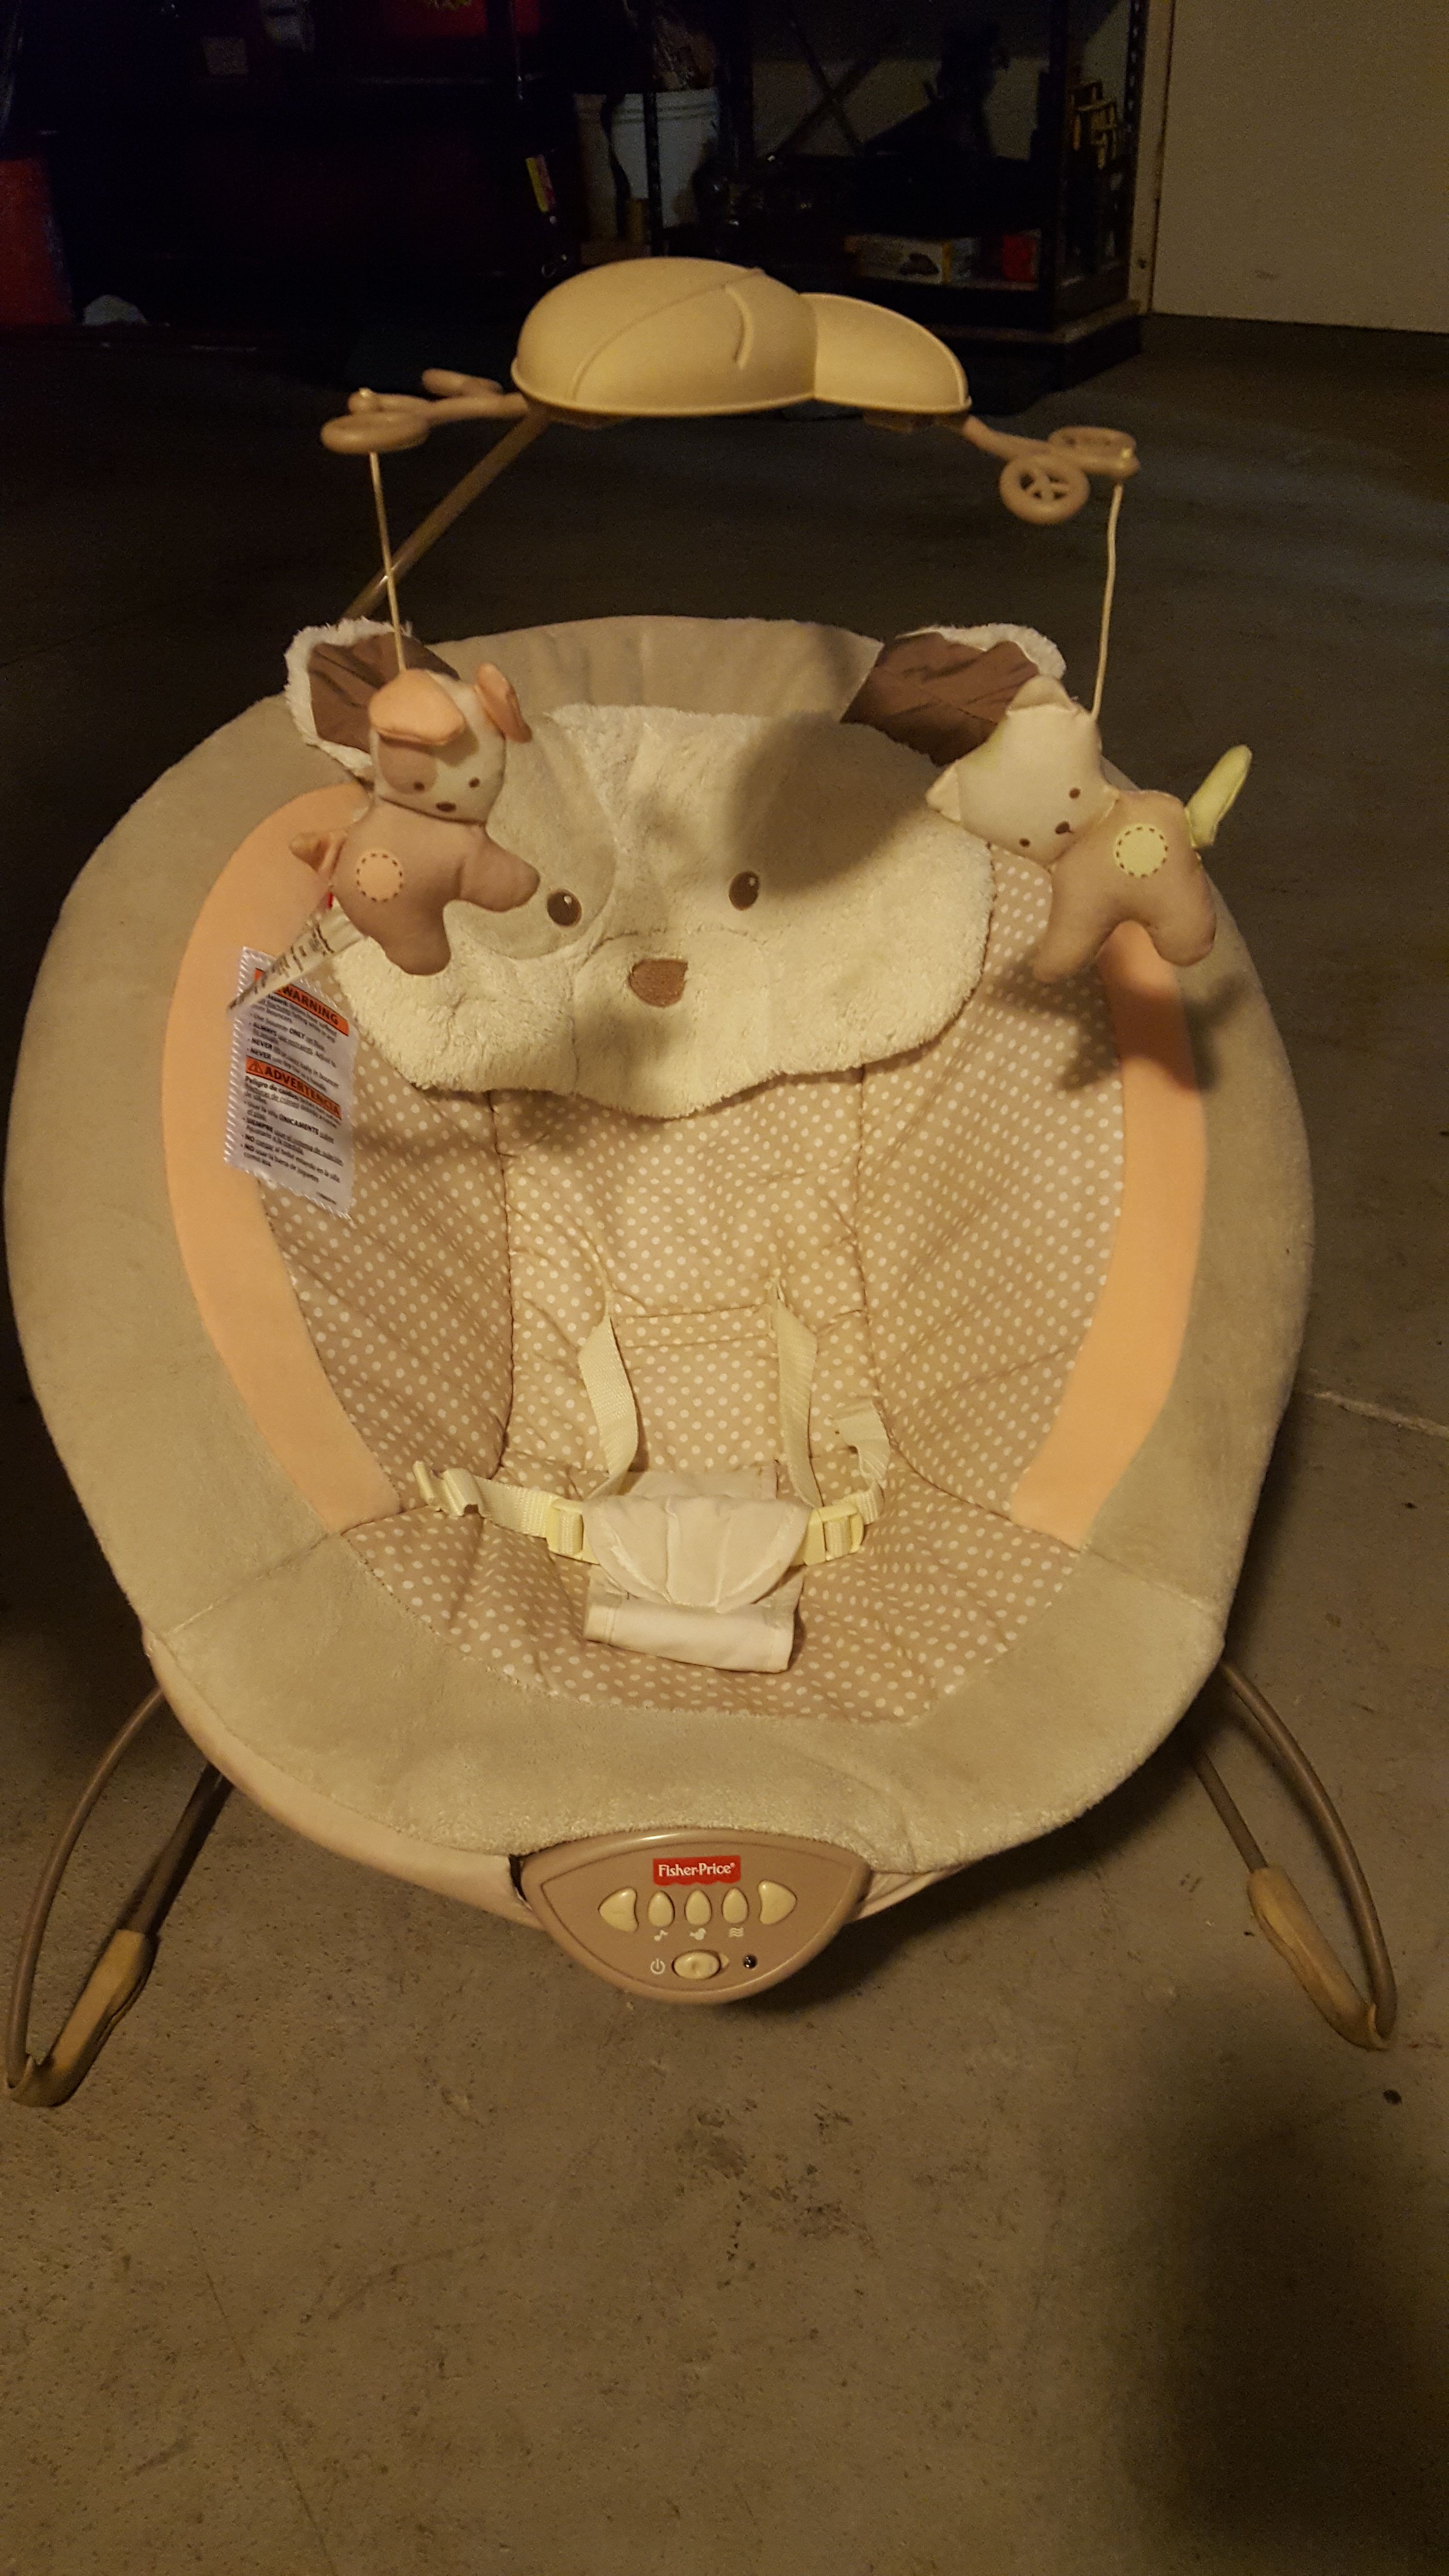 Vibrador para bebé for Sale in Modesto, CA - OfferUp